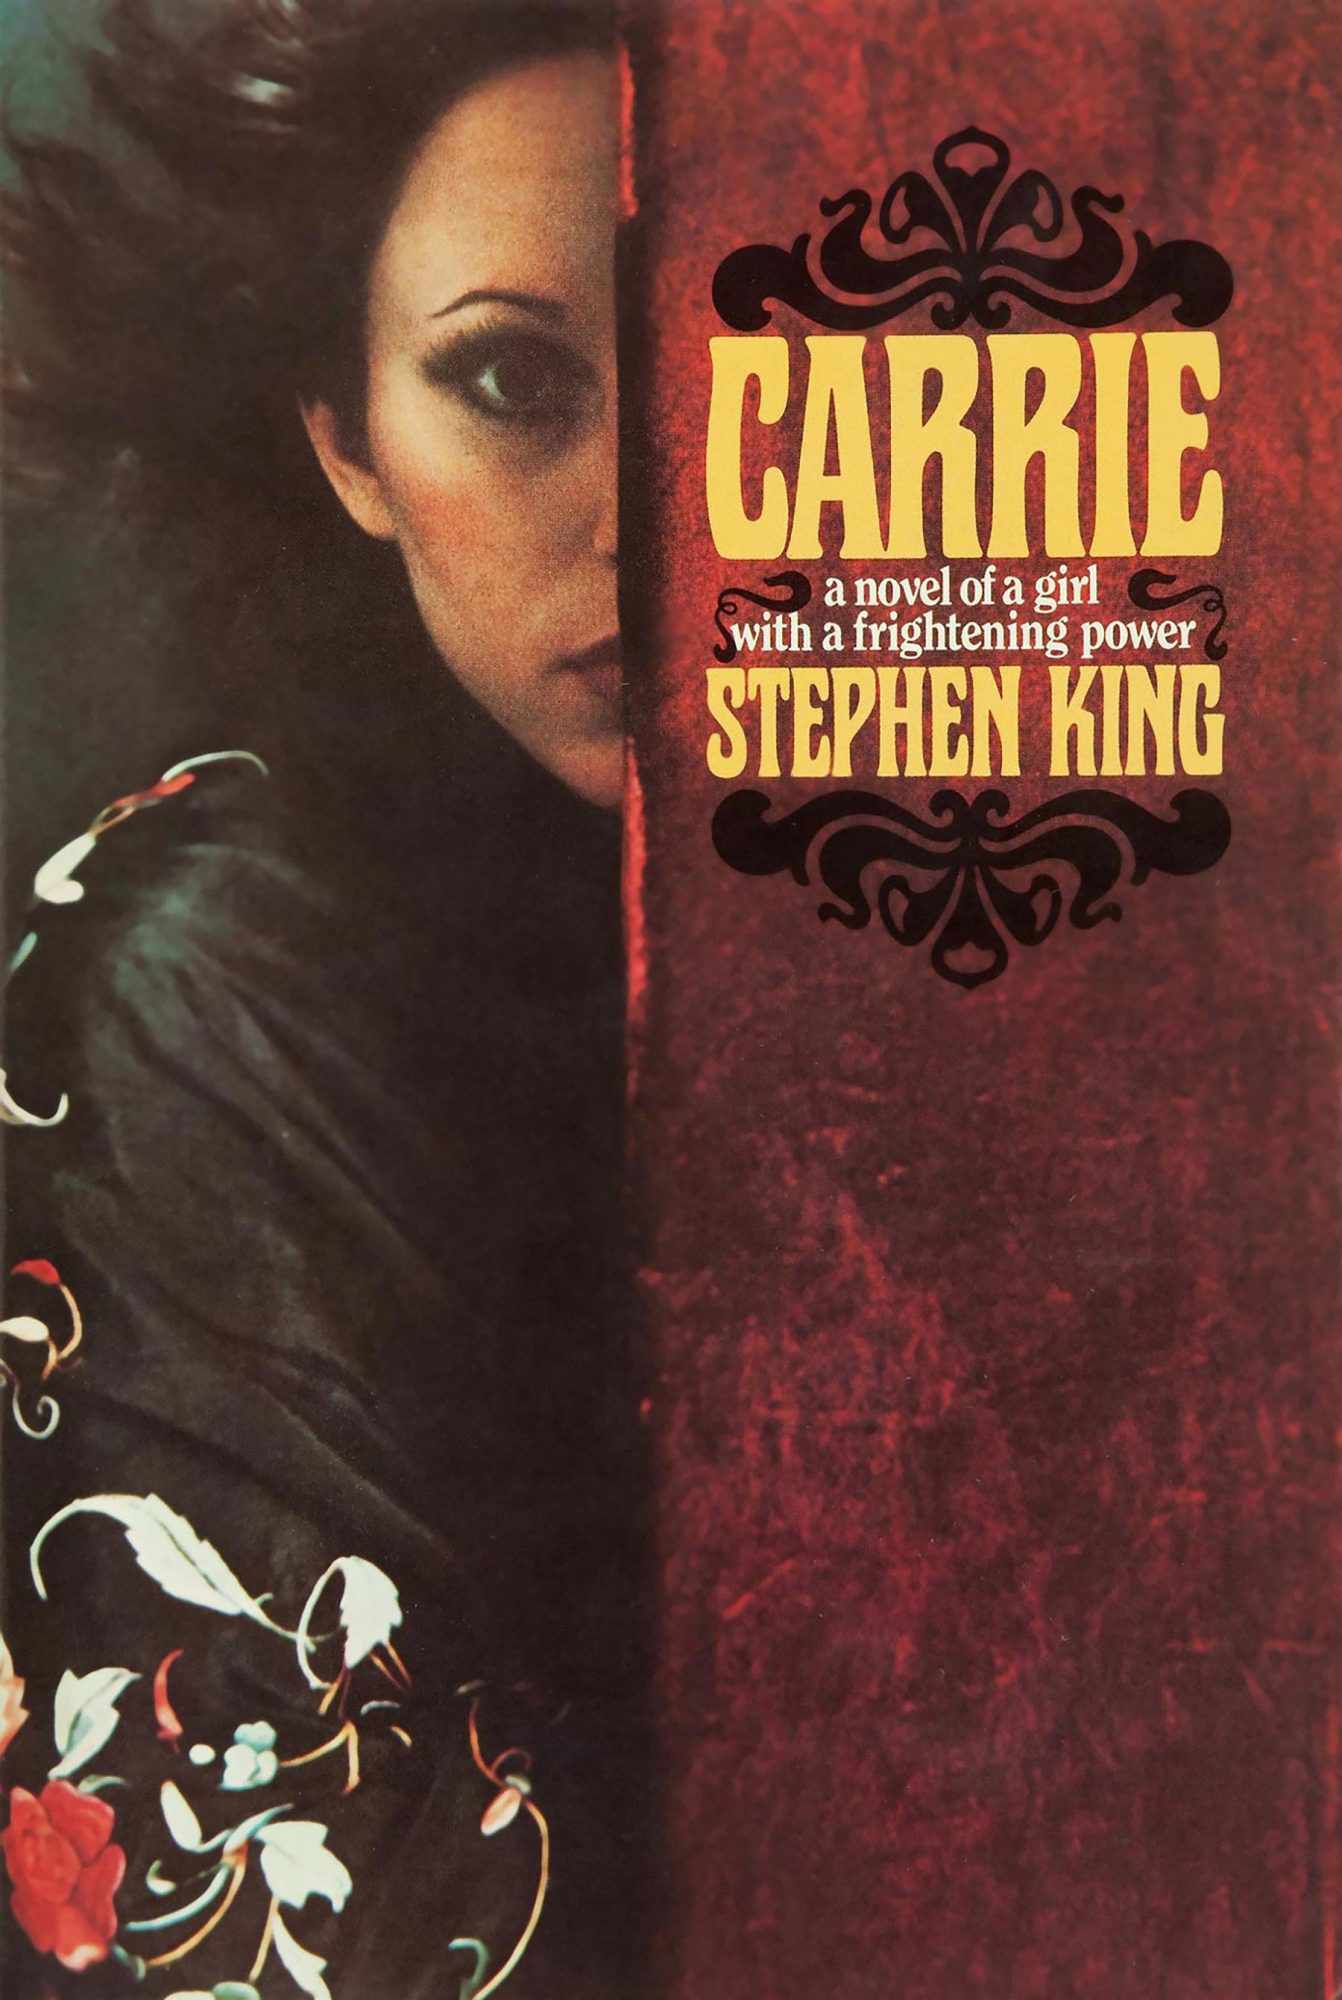 Margaret White (Carrie, by Stephen King)&nbsp;